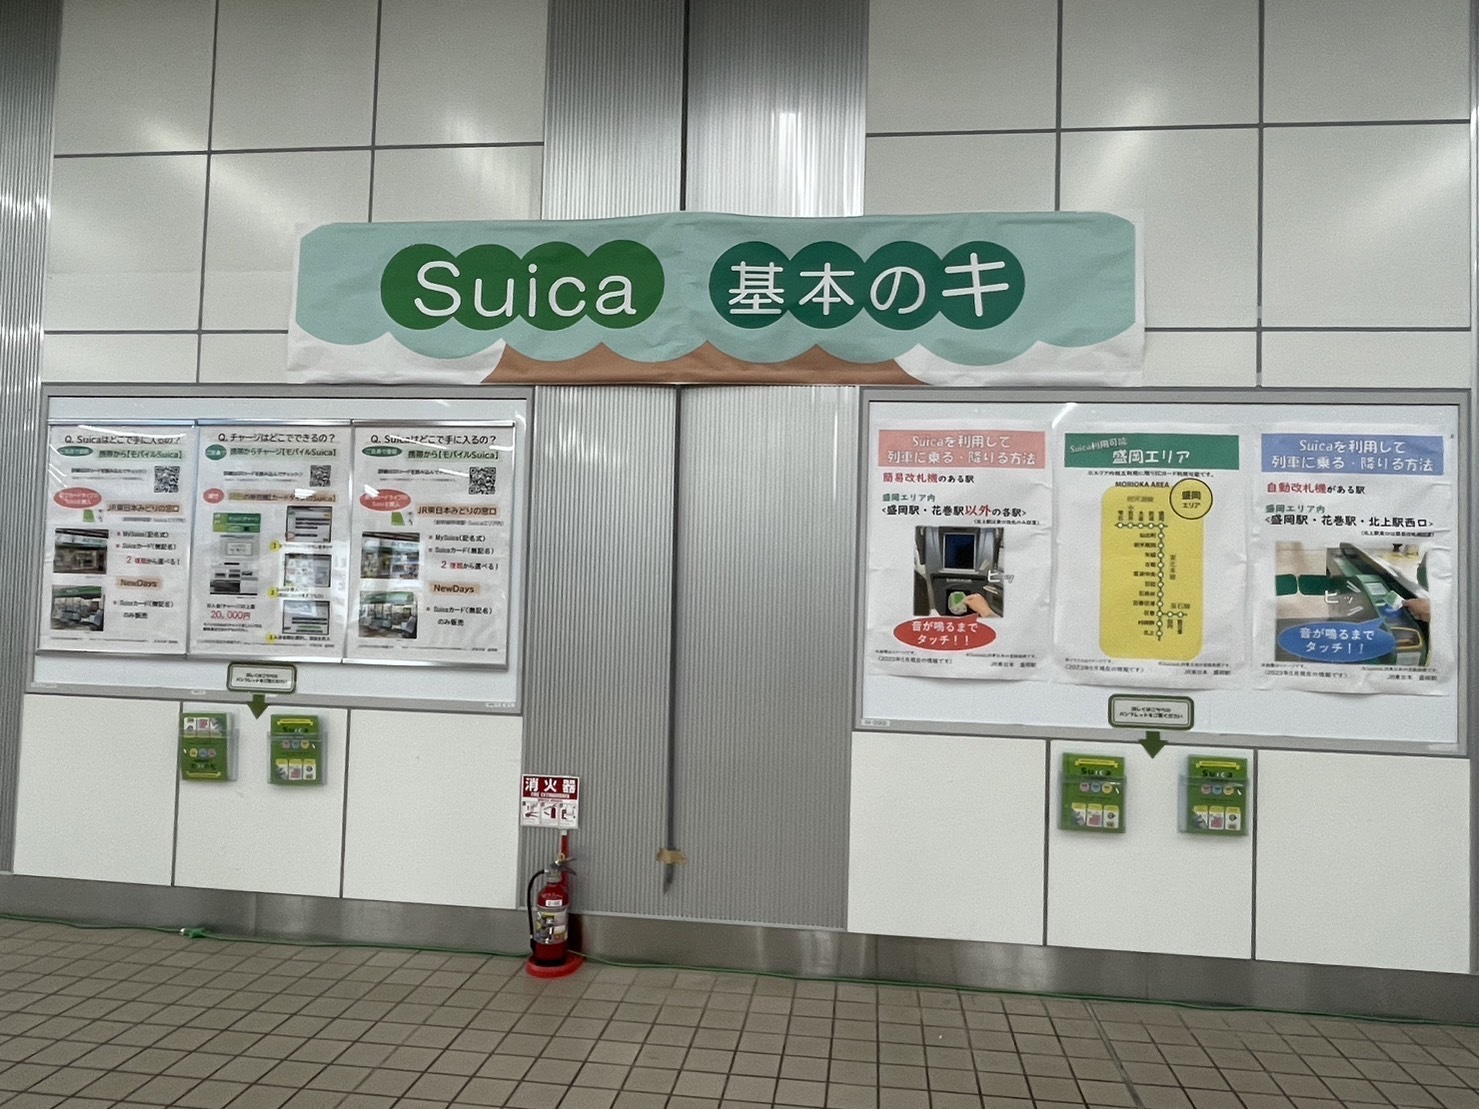 盛岡駅構内に貼られている「Suica 基本のキ」